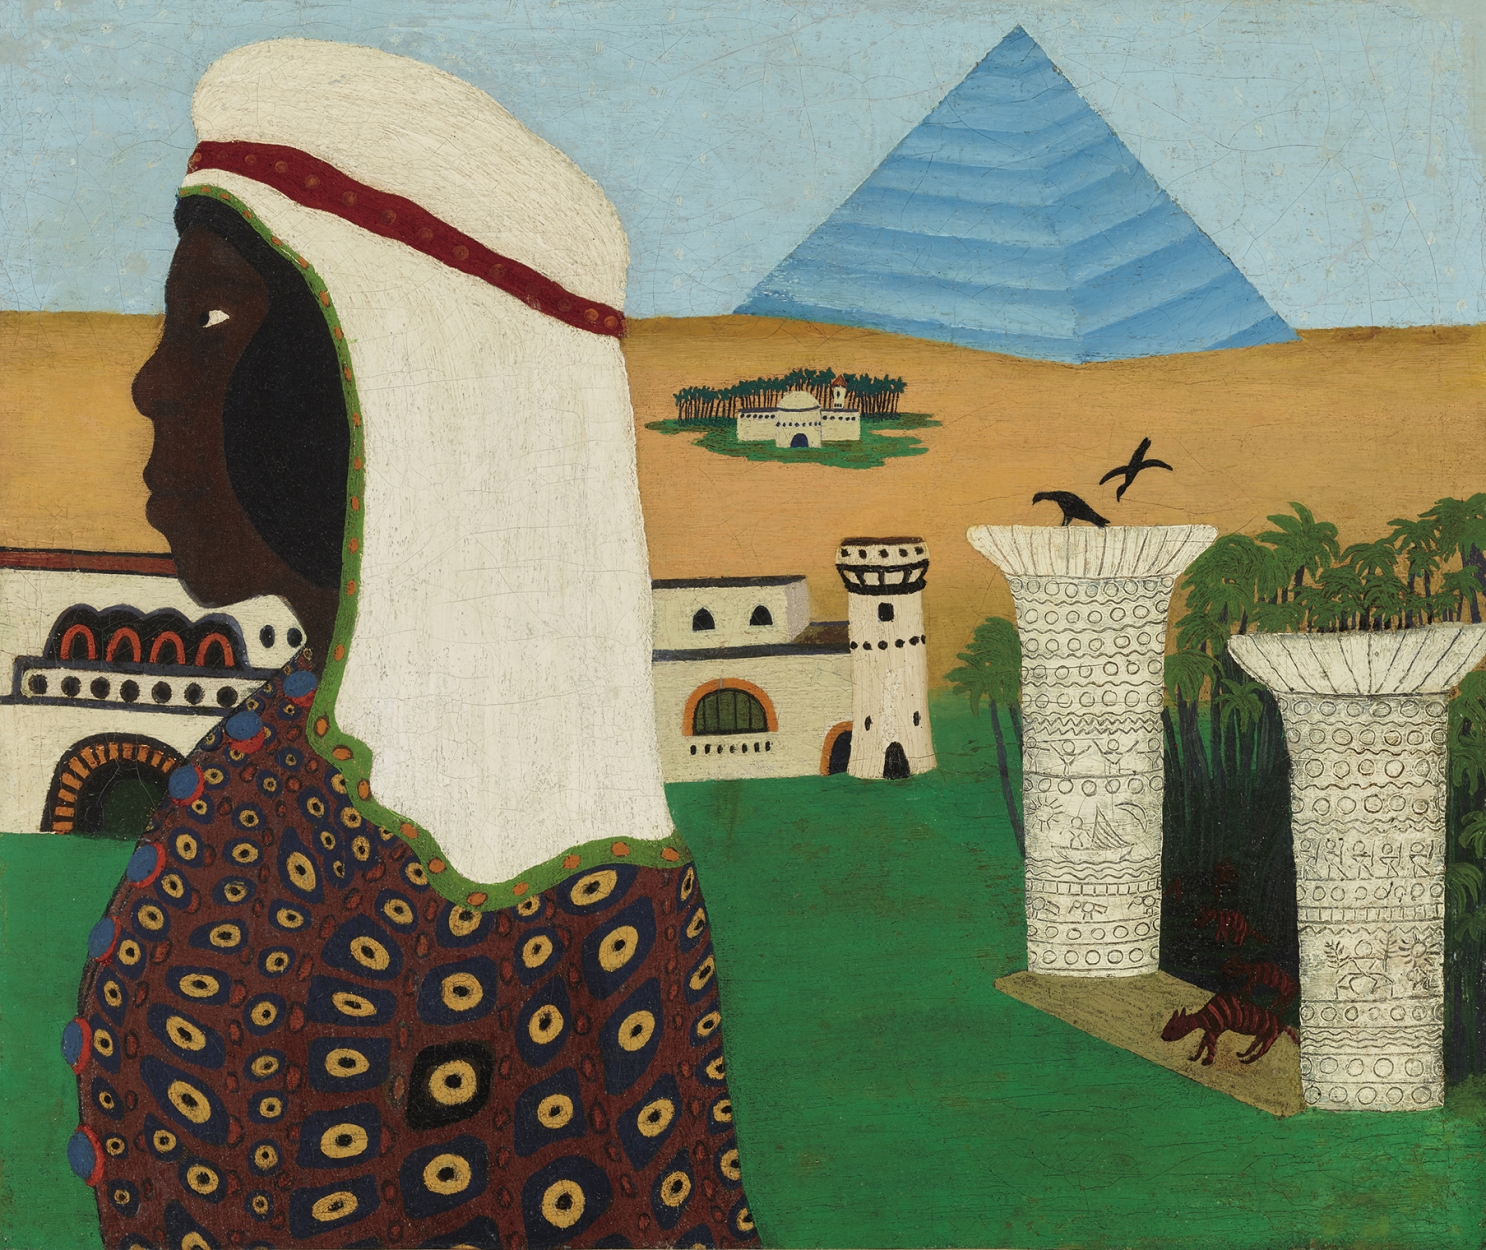 Mokry Mészáros Dezső (1881-1970) Egyptian Female Head (A Memory from Egypt), 1913-14